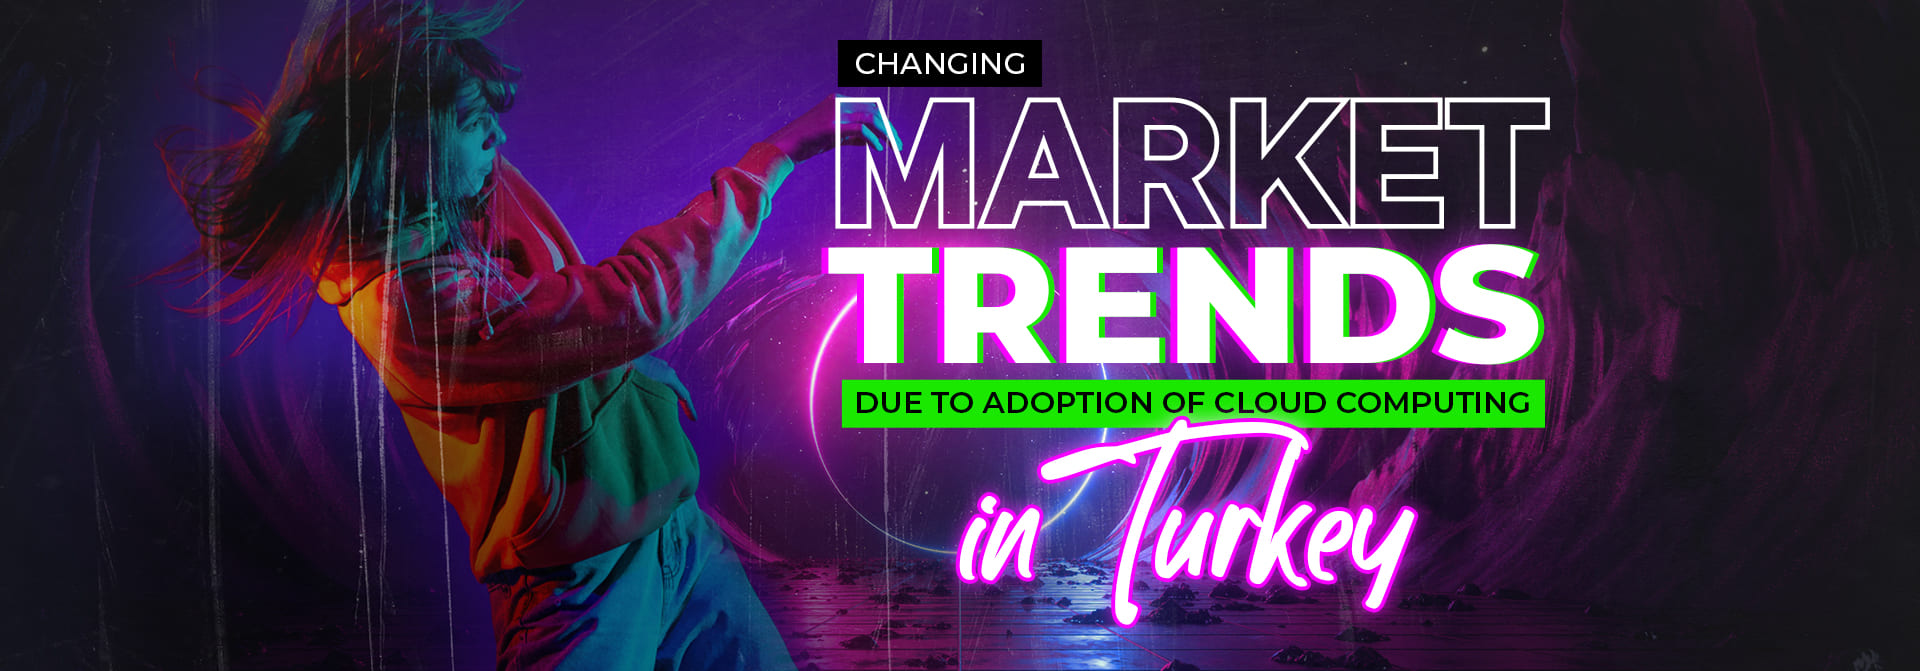 Changing market trends_Turkey_Banner